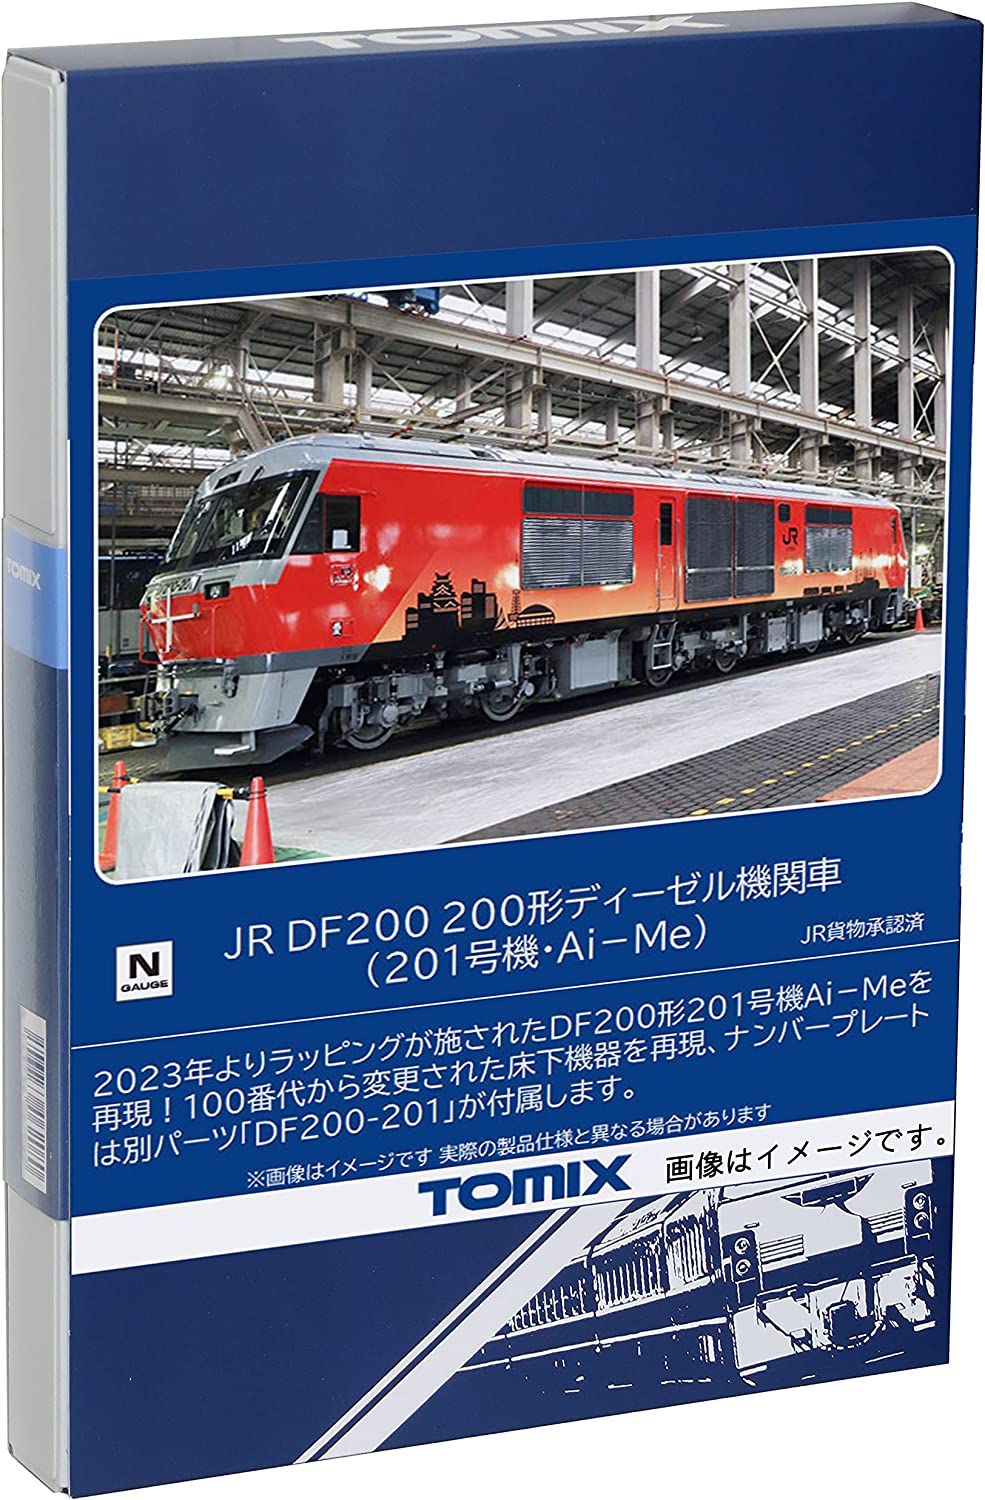 TOMIX HO-211 JR DF200-200形ディーゼル機関車旧車グッズ